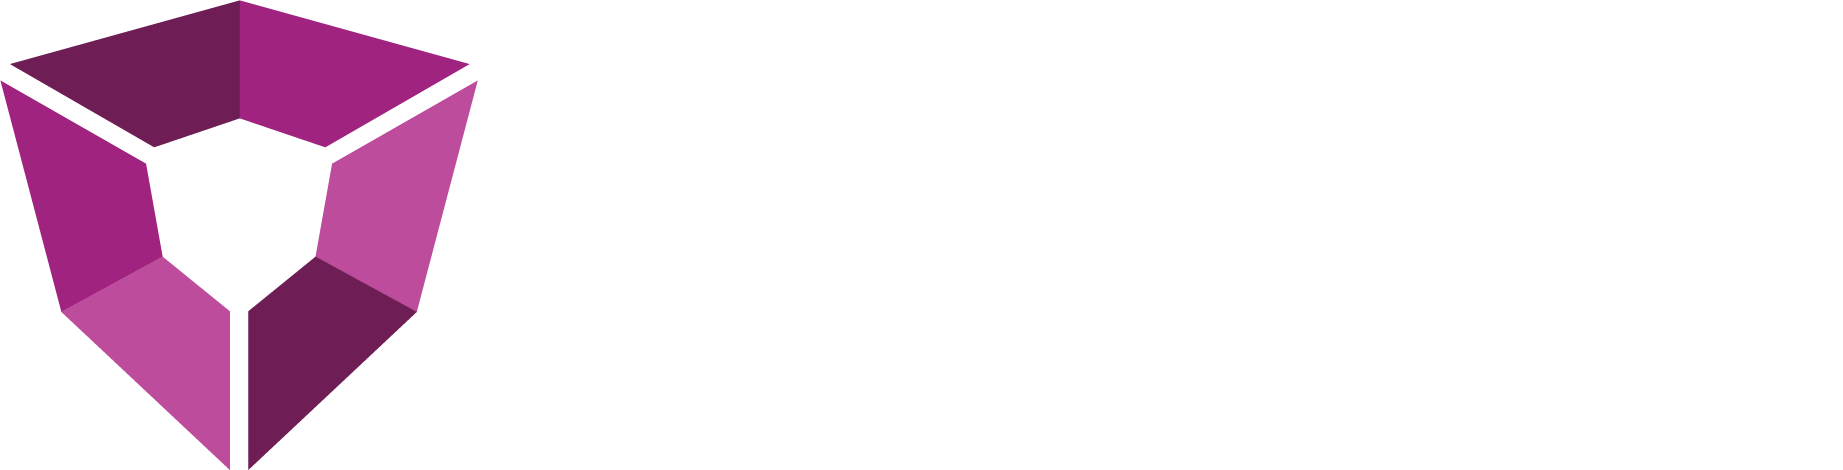 petro-logo-fullcolor-wtxt-0923-v2